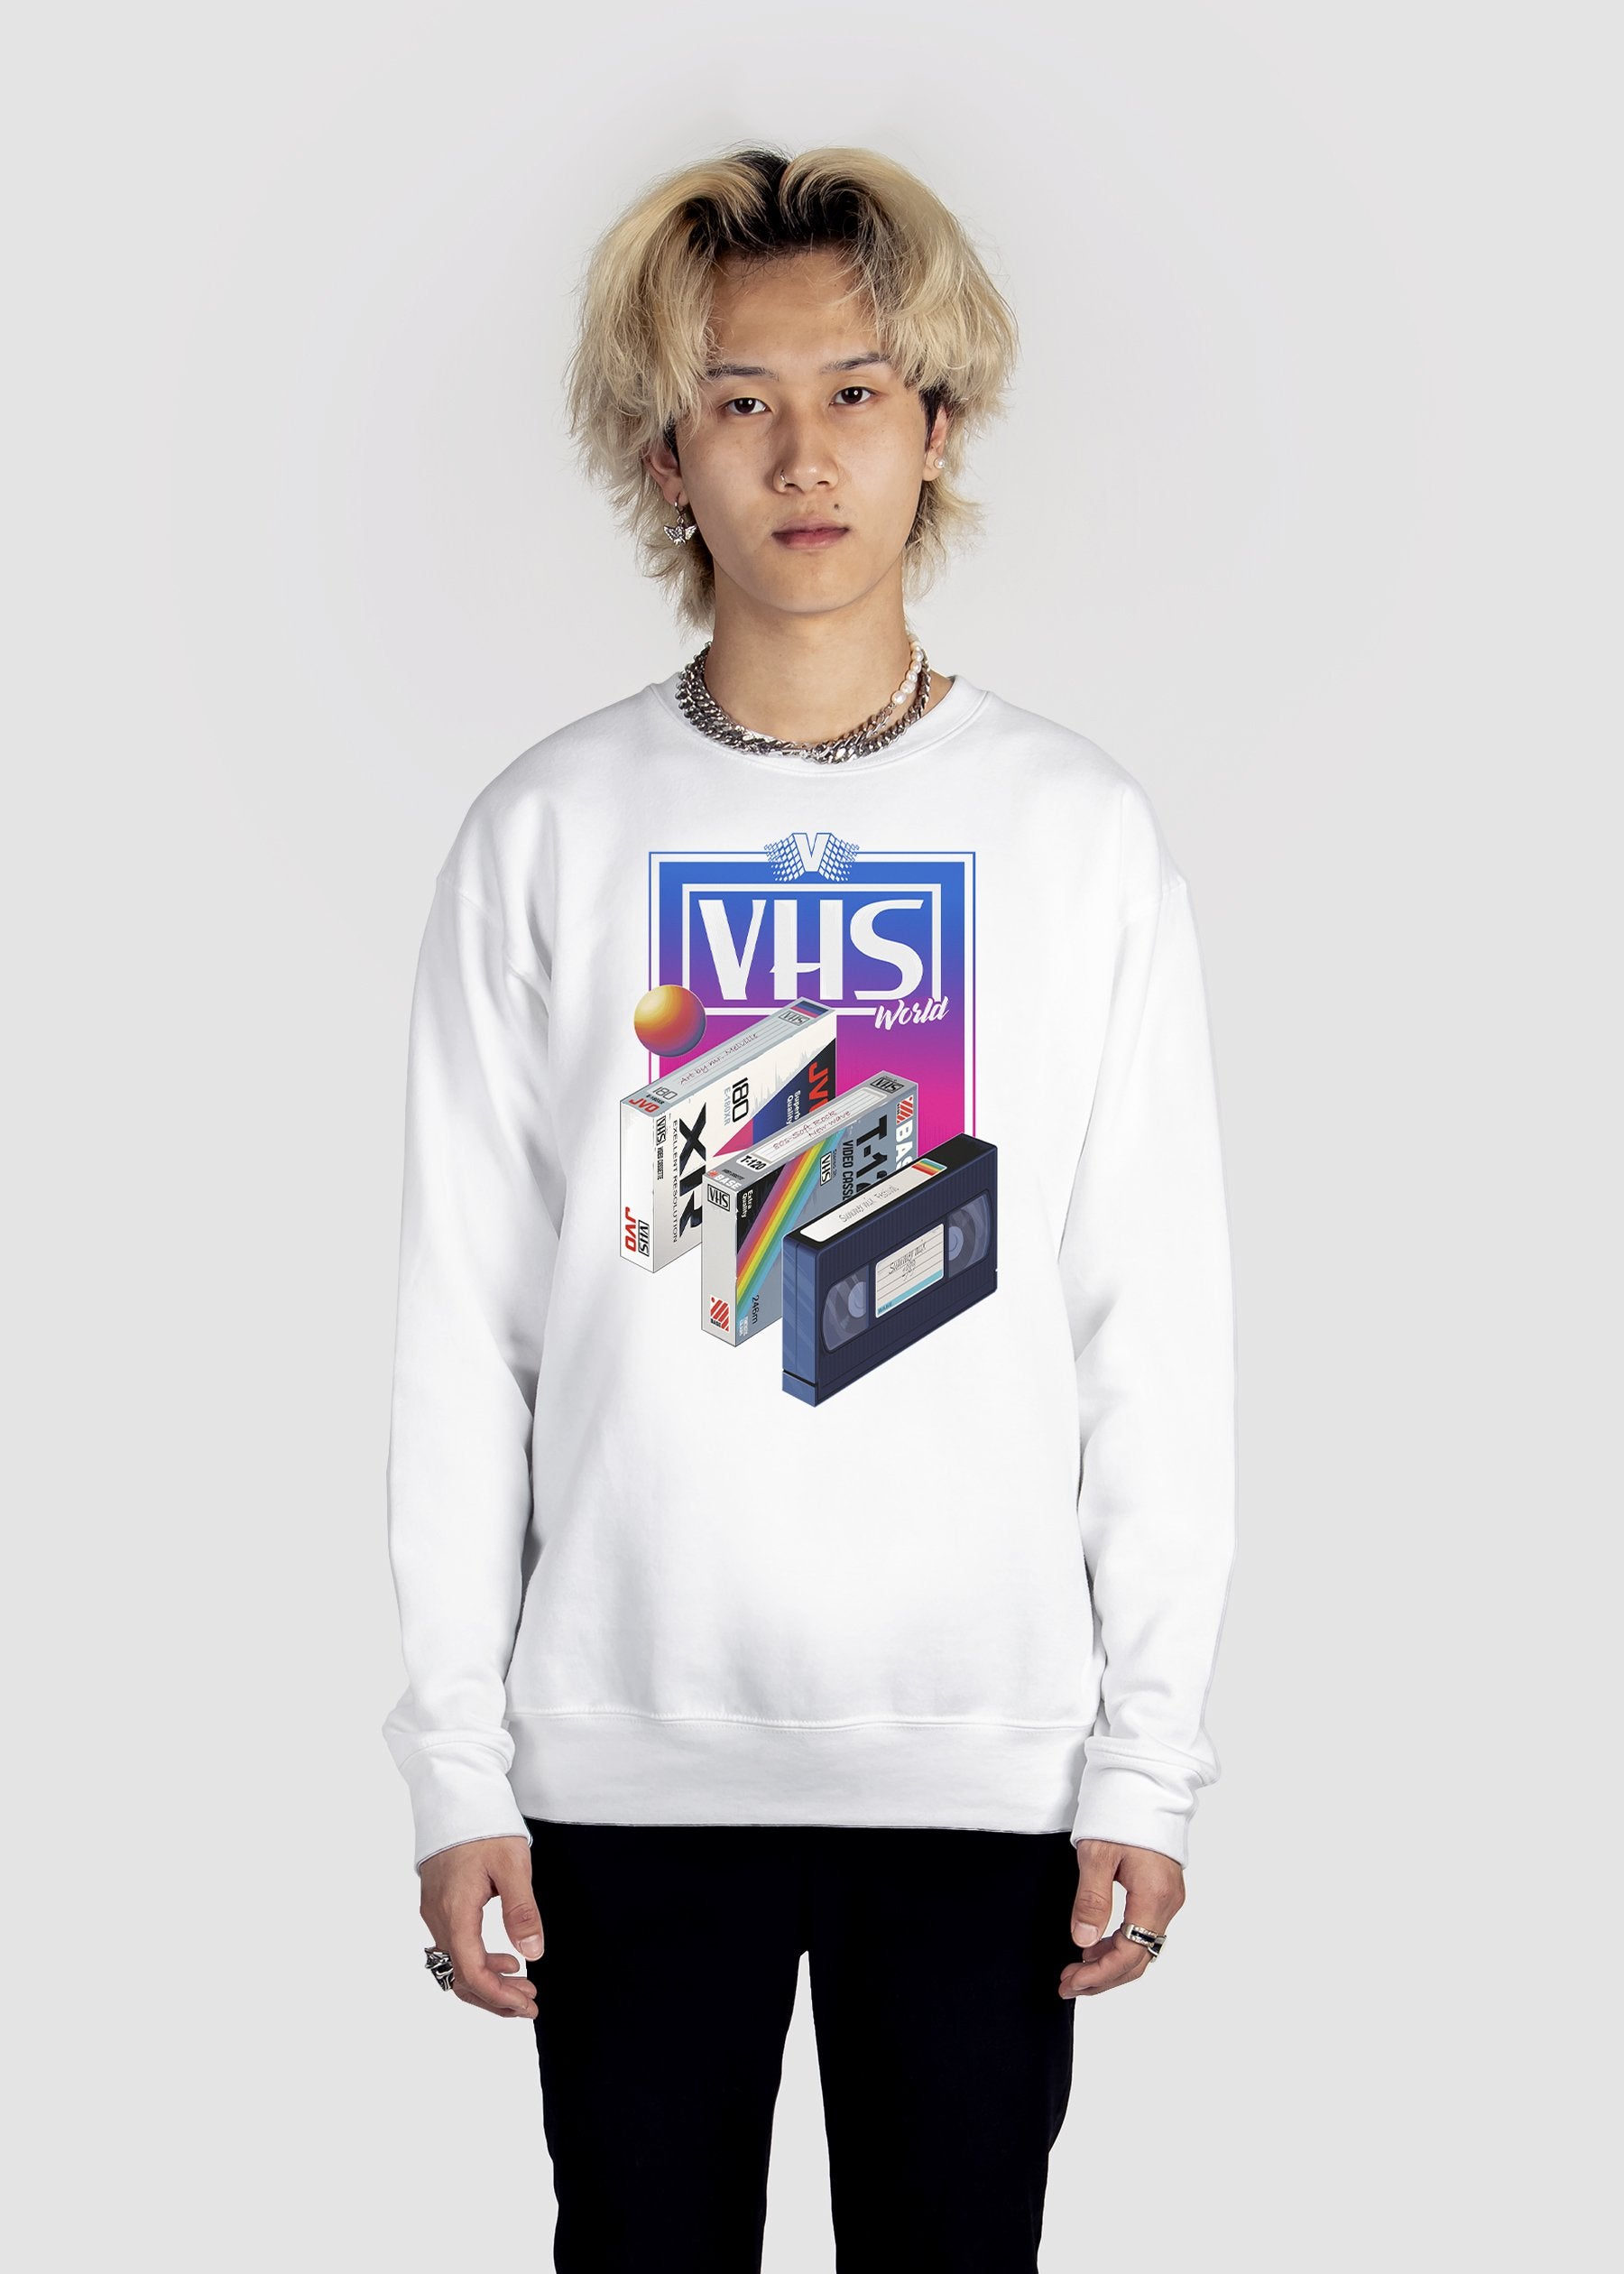 VHS World Sweatshirt Graphic Sweatshirt Vapor95 White S